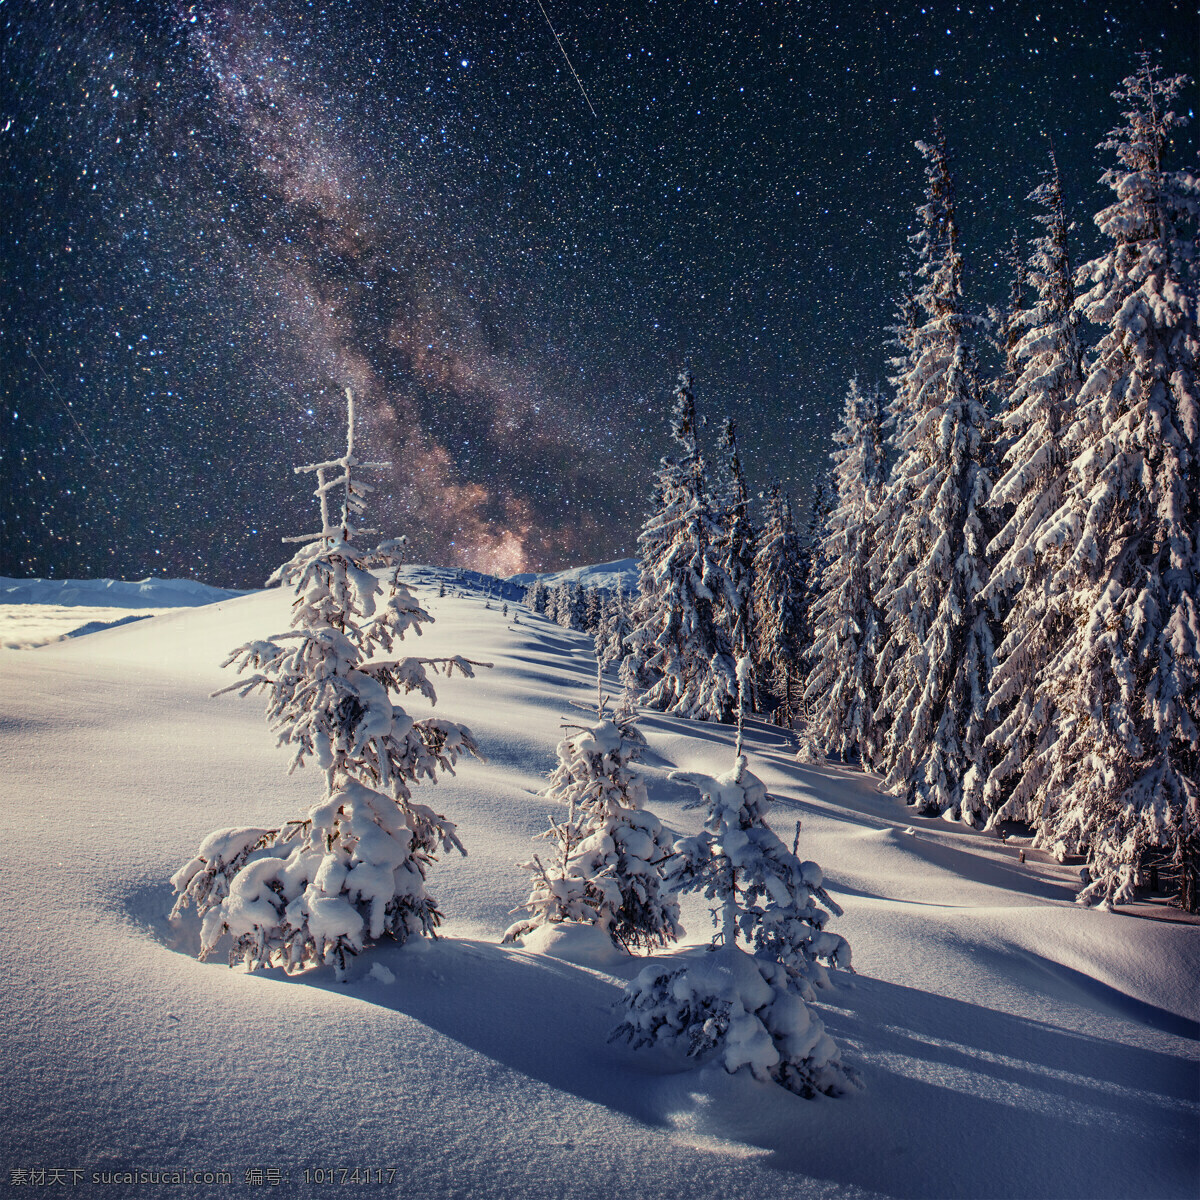 星空 树林 雪地 冰天雪地 美丽雪景 冬天风景 树木 道路 雪景 美景 雪景图片 风景图片